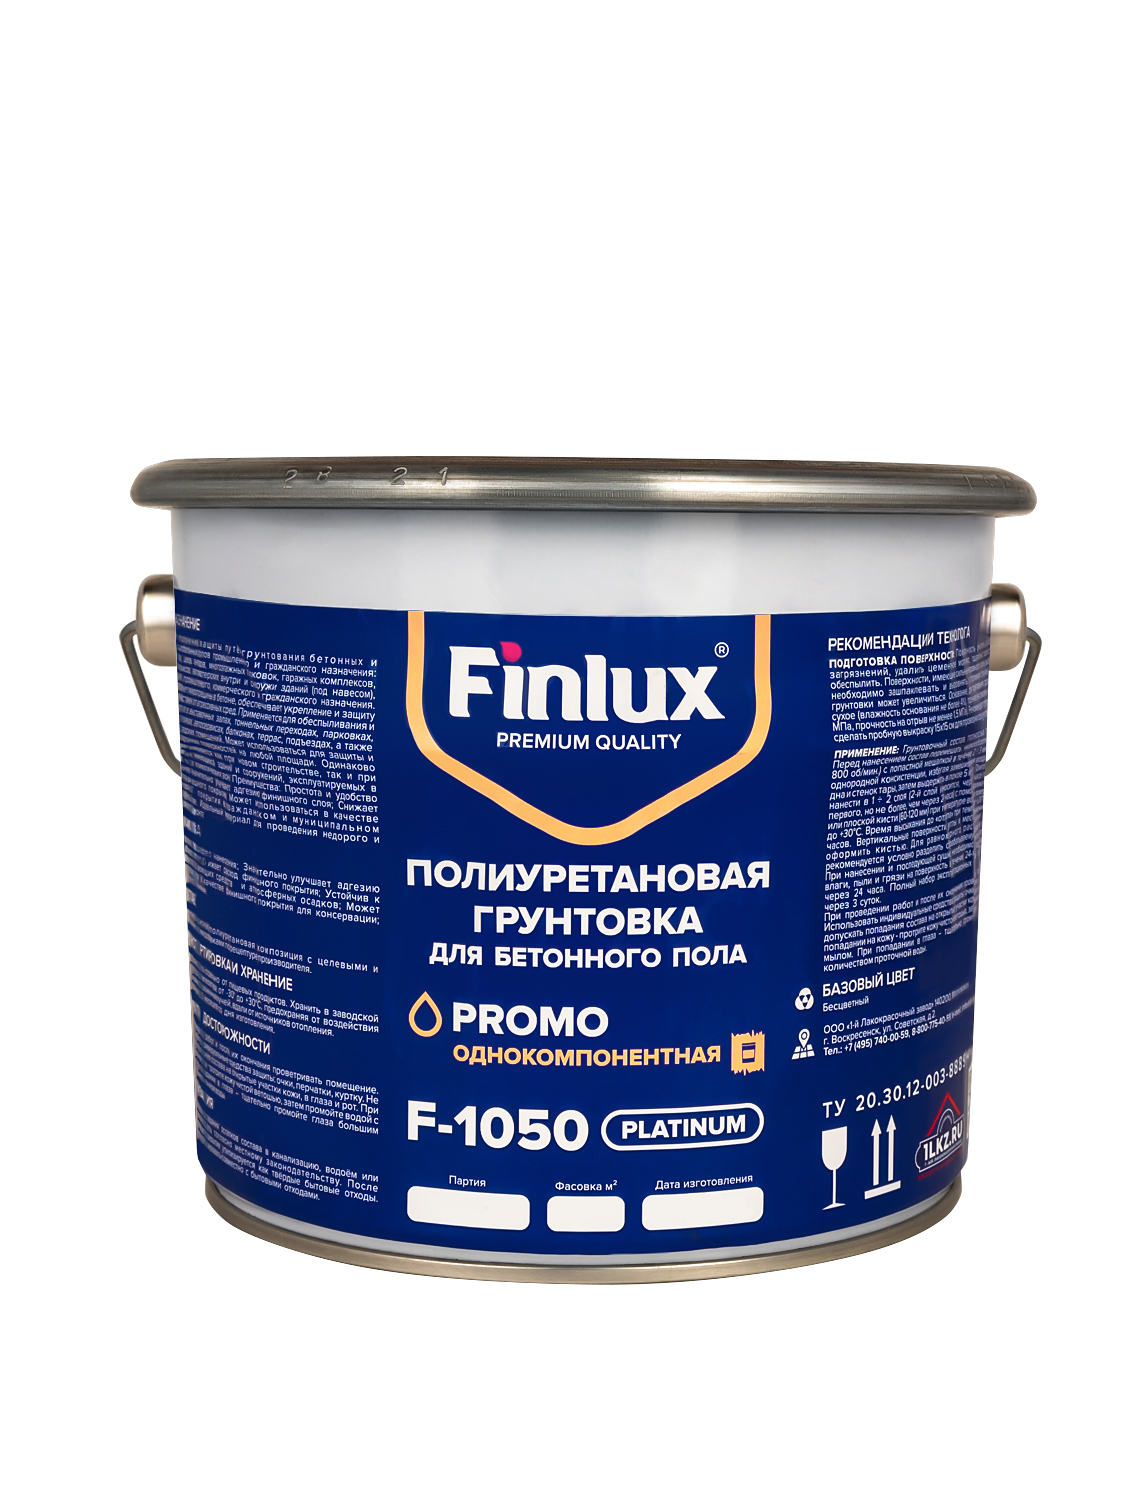 Полиуретановая грунтовка для бетонного пола Finlux F-1050Platinum 10 кв.м наливной пол pollastimax уф идеальный пол полиуретановый для бетонного пола 6 3 кг